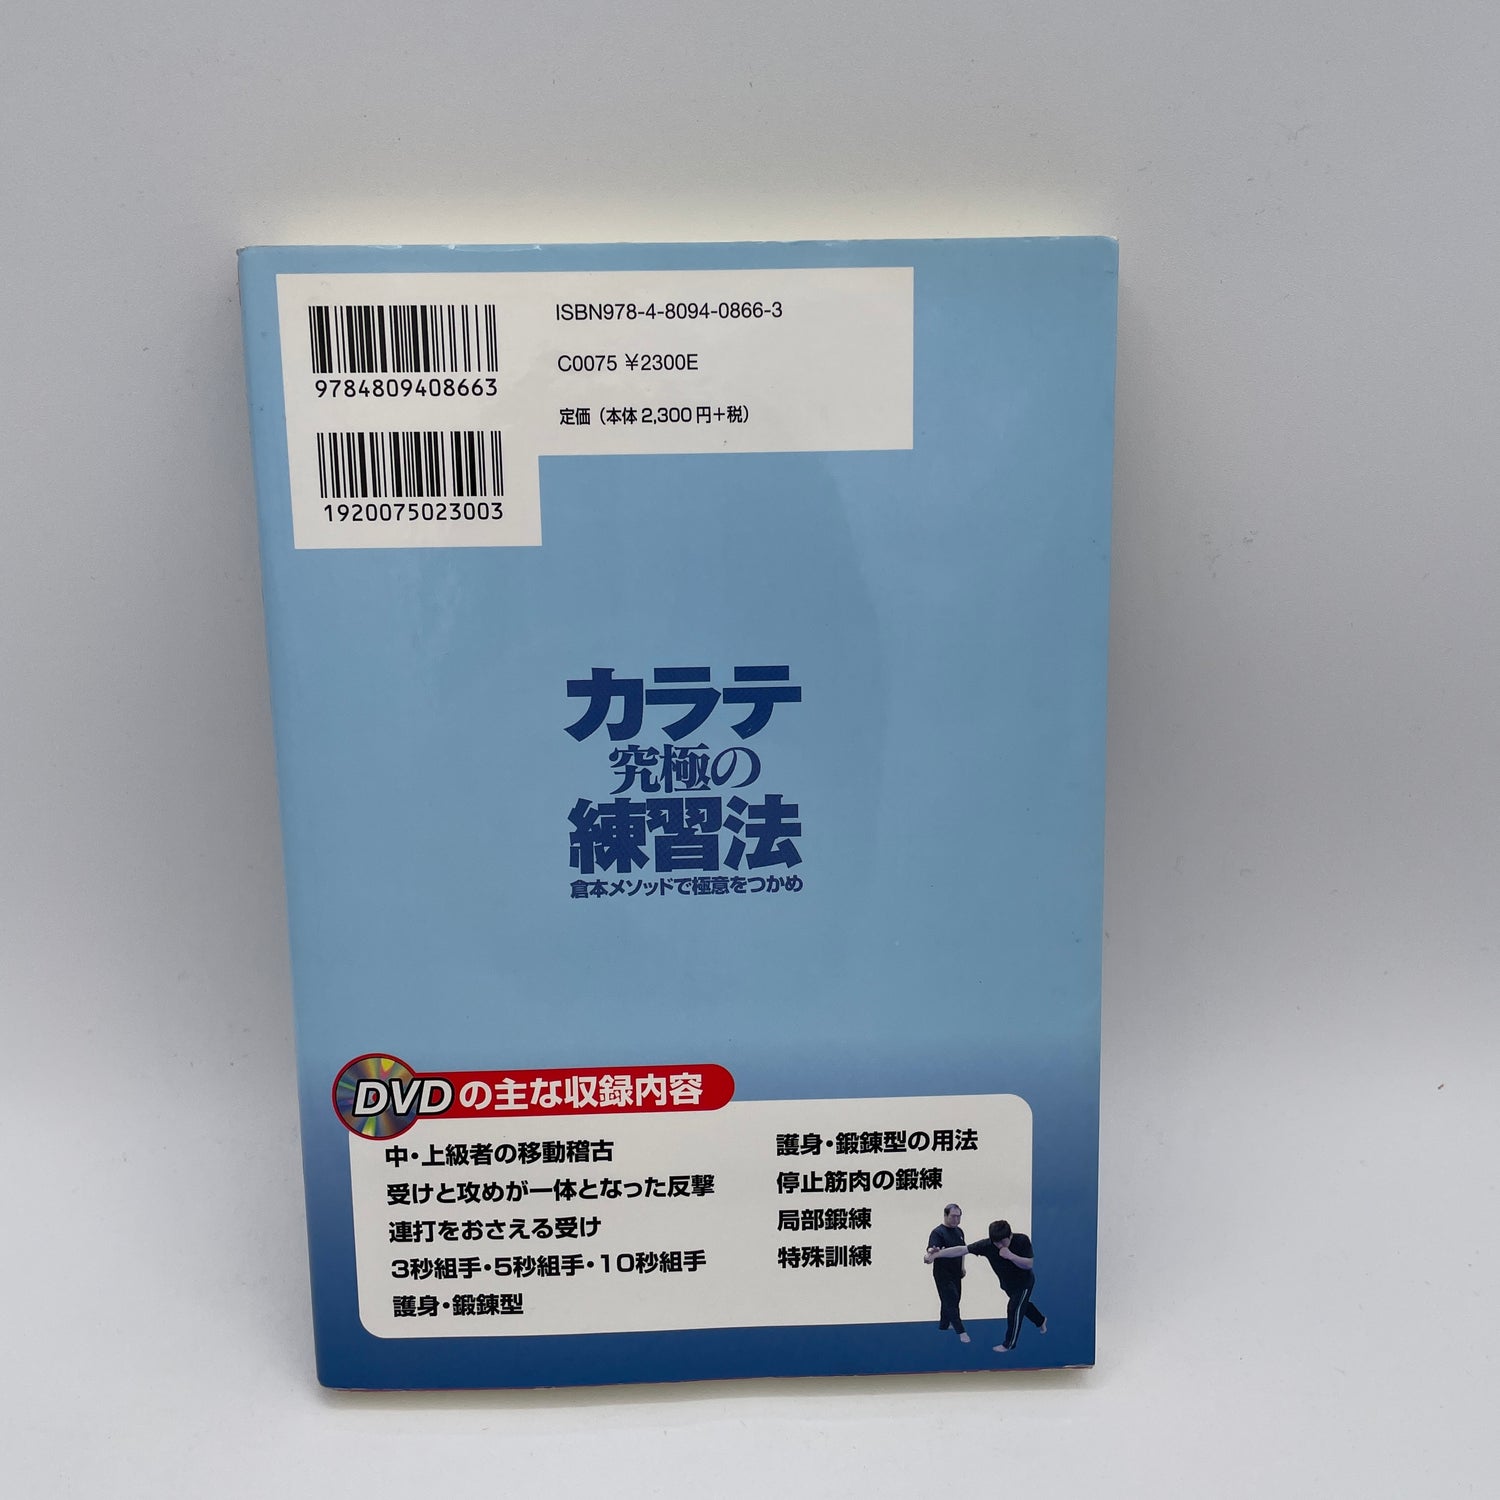 Libro y DVD de Karate del Método Kuramoto de Nariharu Kuramoto (usado)